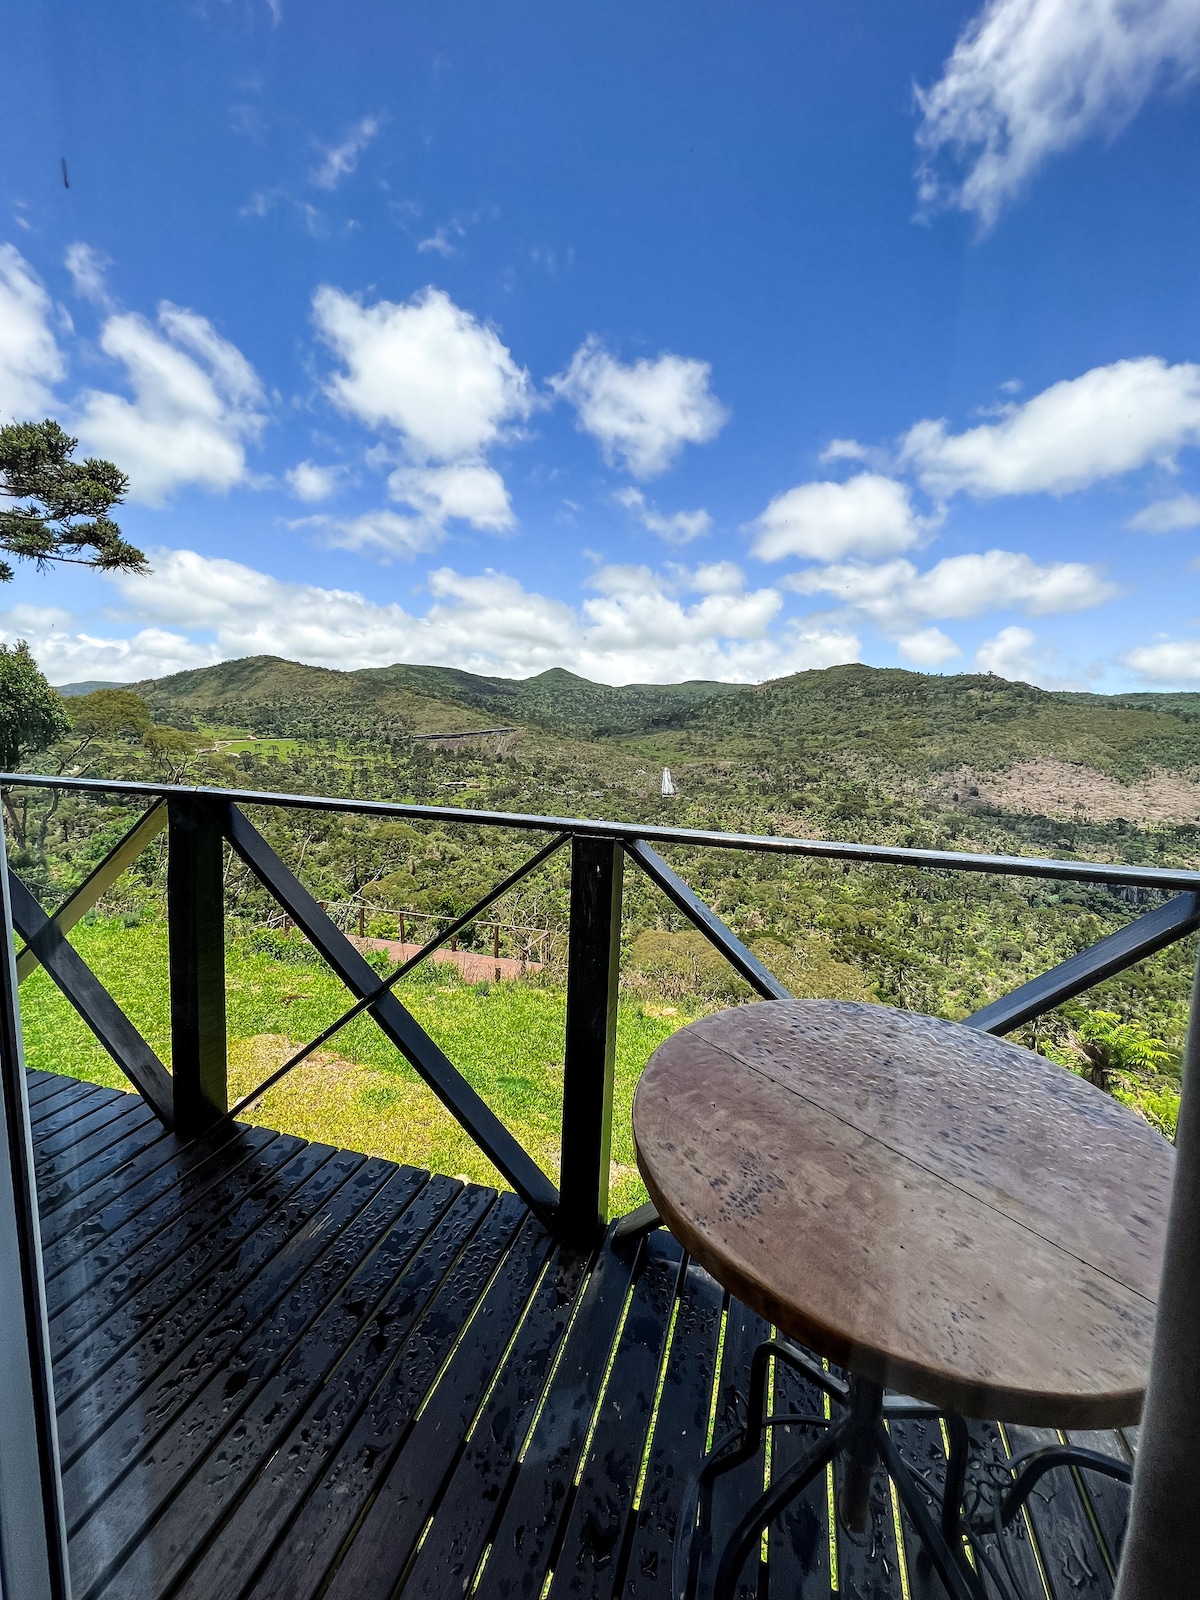 度假木屋，可欣赏到Véu de Noiva瀑布的壮观景观！